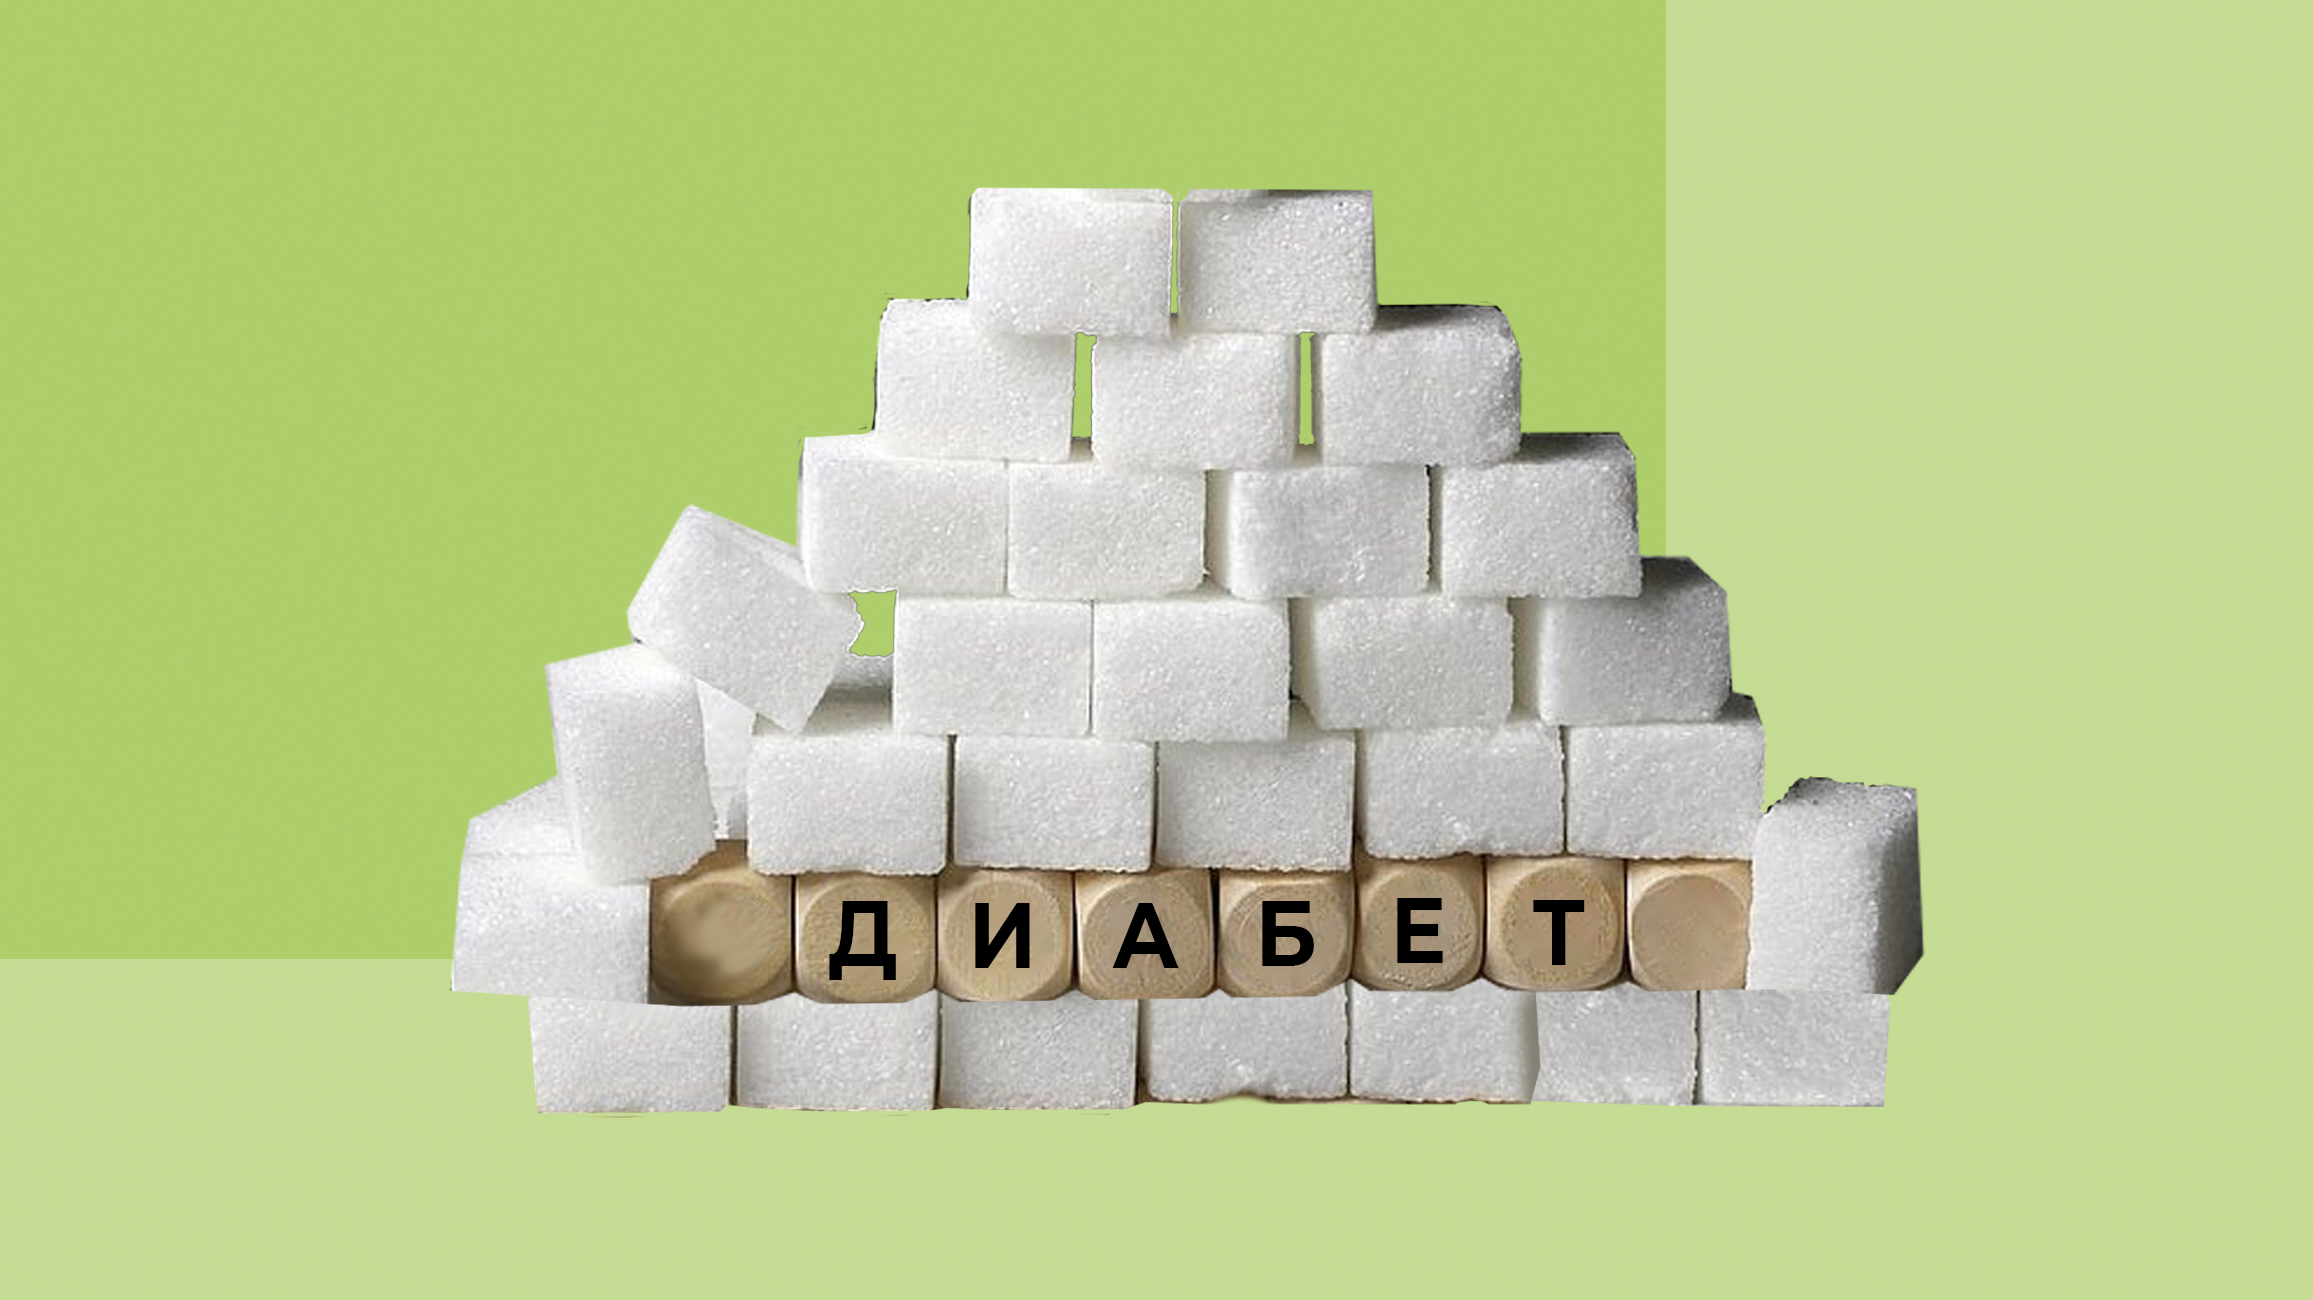 Сахарный диабет - проблема мирового масштаба